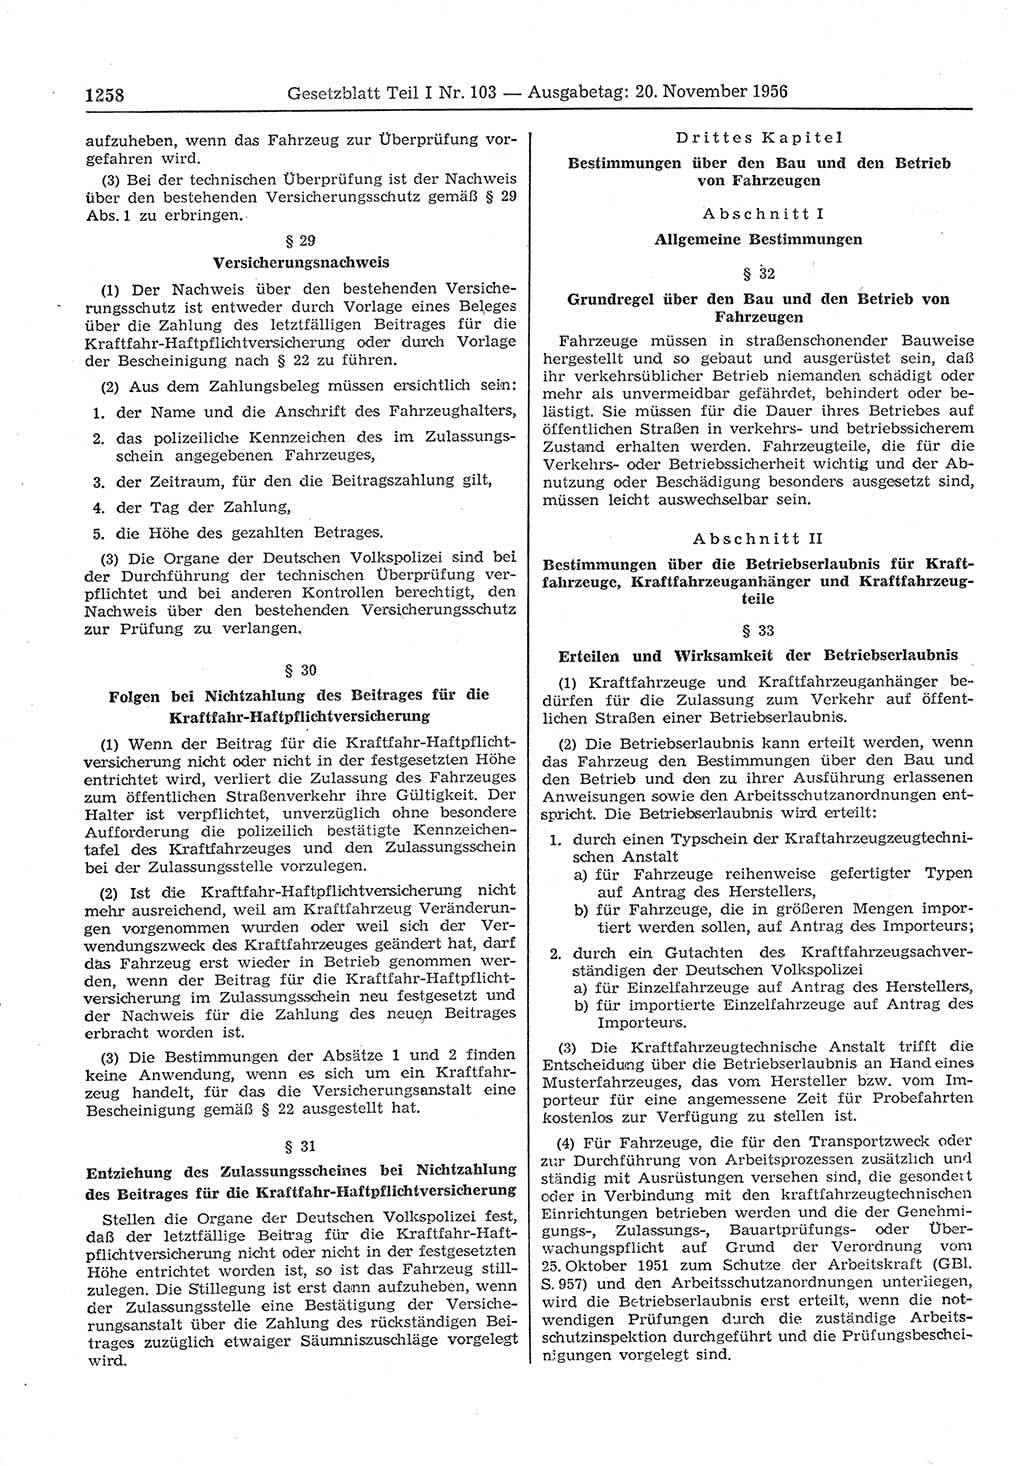 Gesetzblatt (GBl.) der Deutschen Demokratischen Republik (DDR) Teil Ⅰ 1956, Seite 1258 (GBl. DDR Ⅰ 1956, S. 1258)